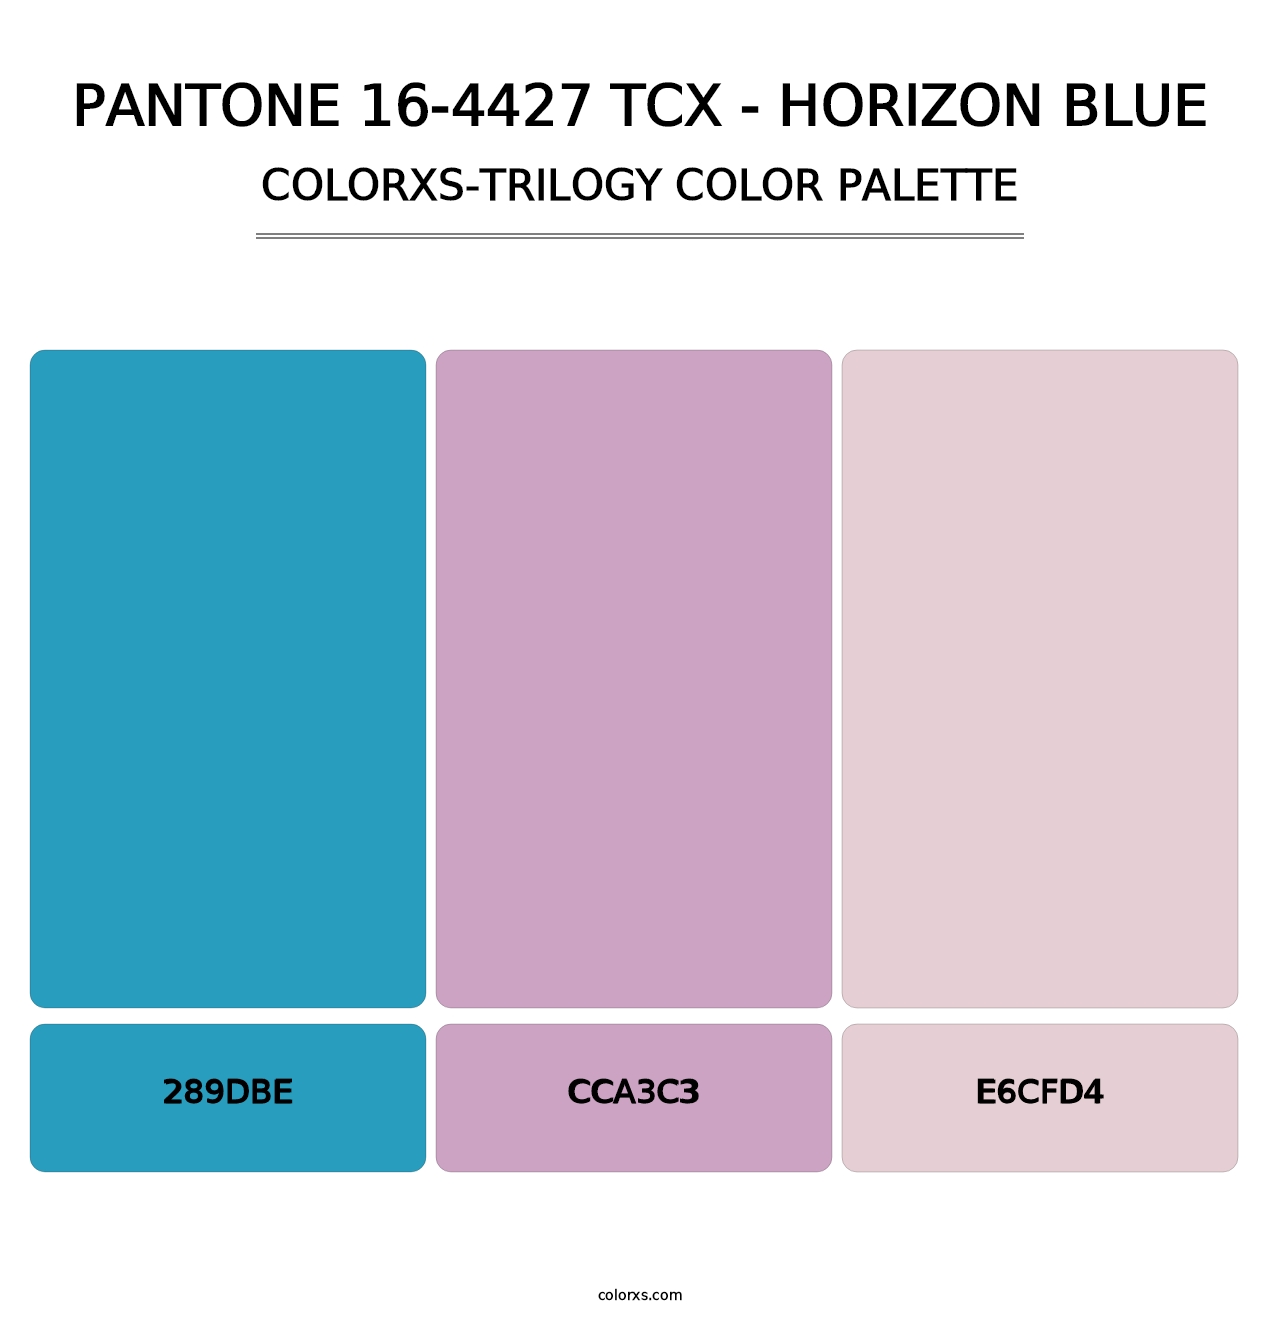 PANTONE 16-4427 TCX - Horizon Blue - Colorxs Trilogy Palette